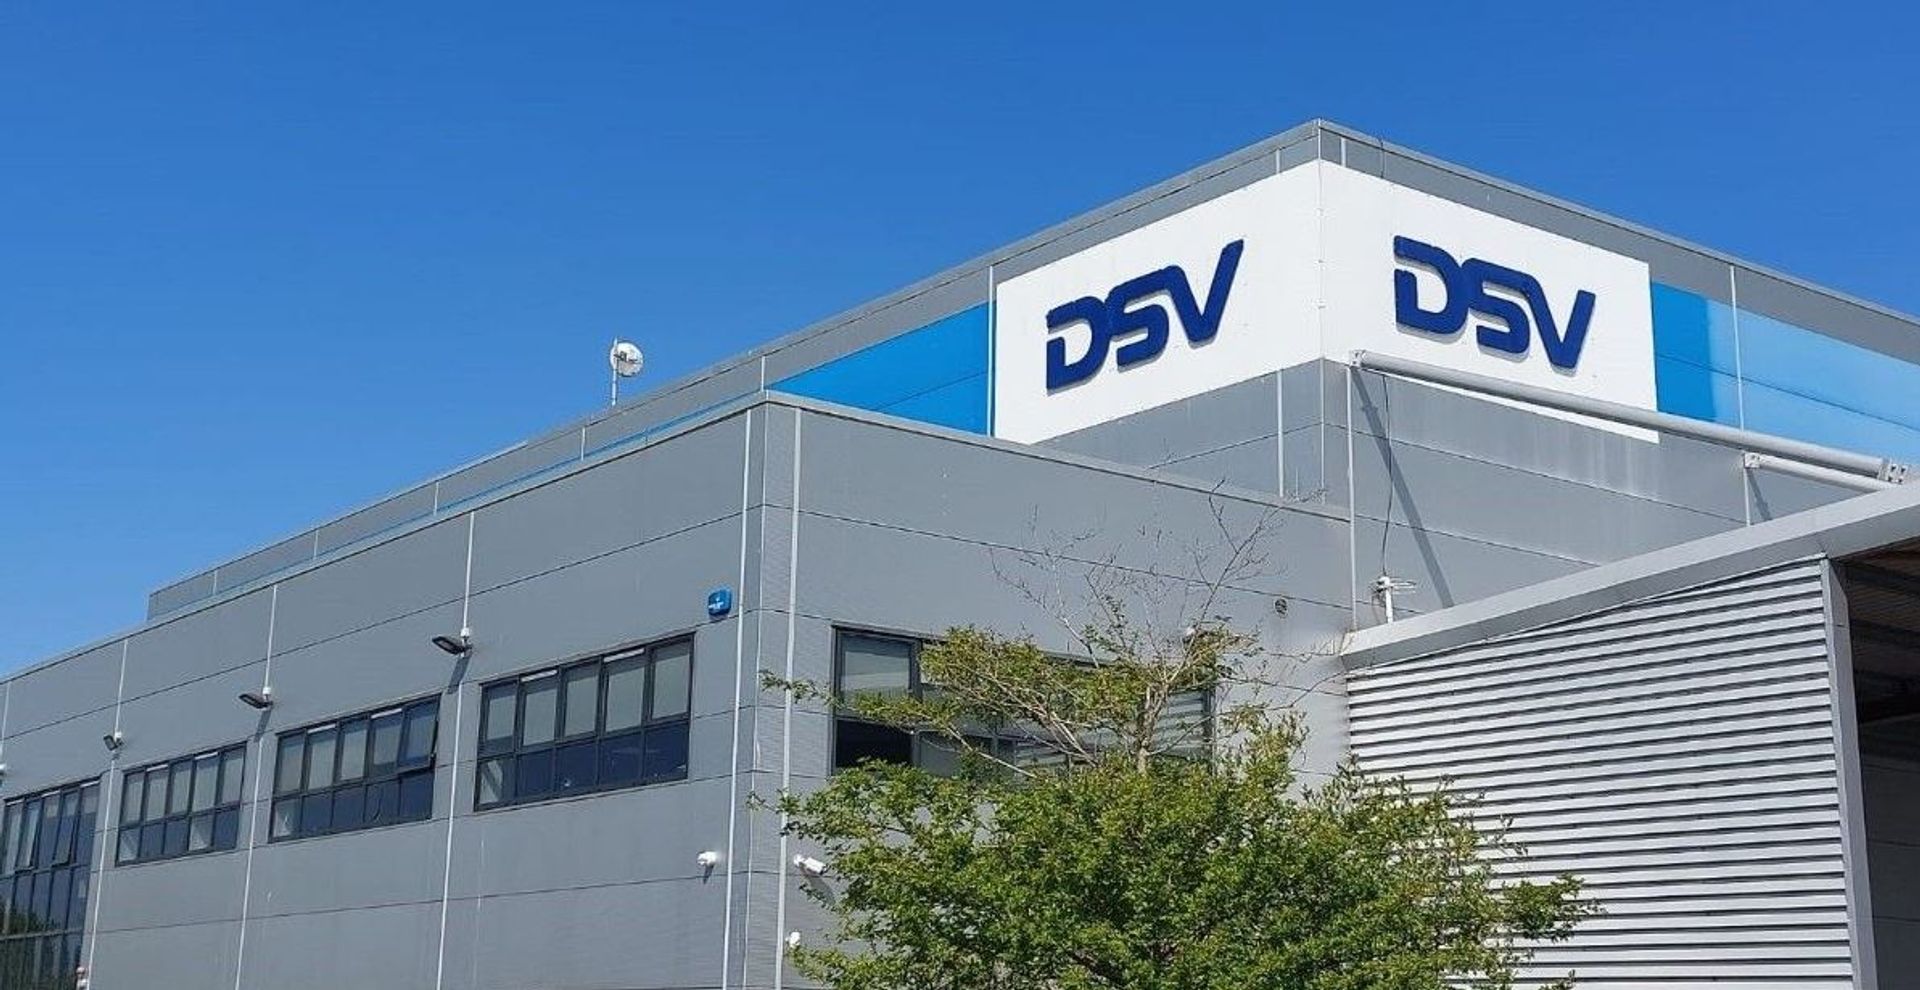 Duńska firma DSV wyda ponad miliard złotych na nowe inwestycje w Polsce